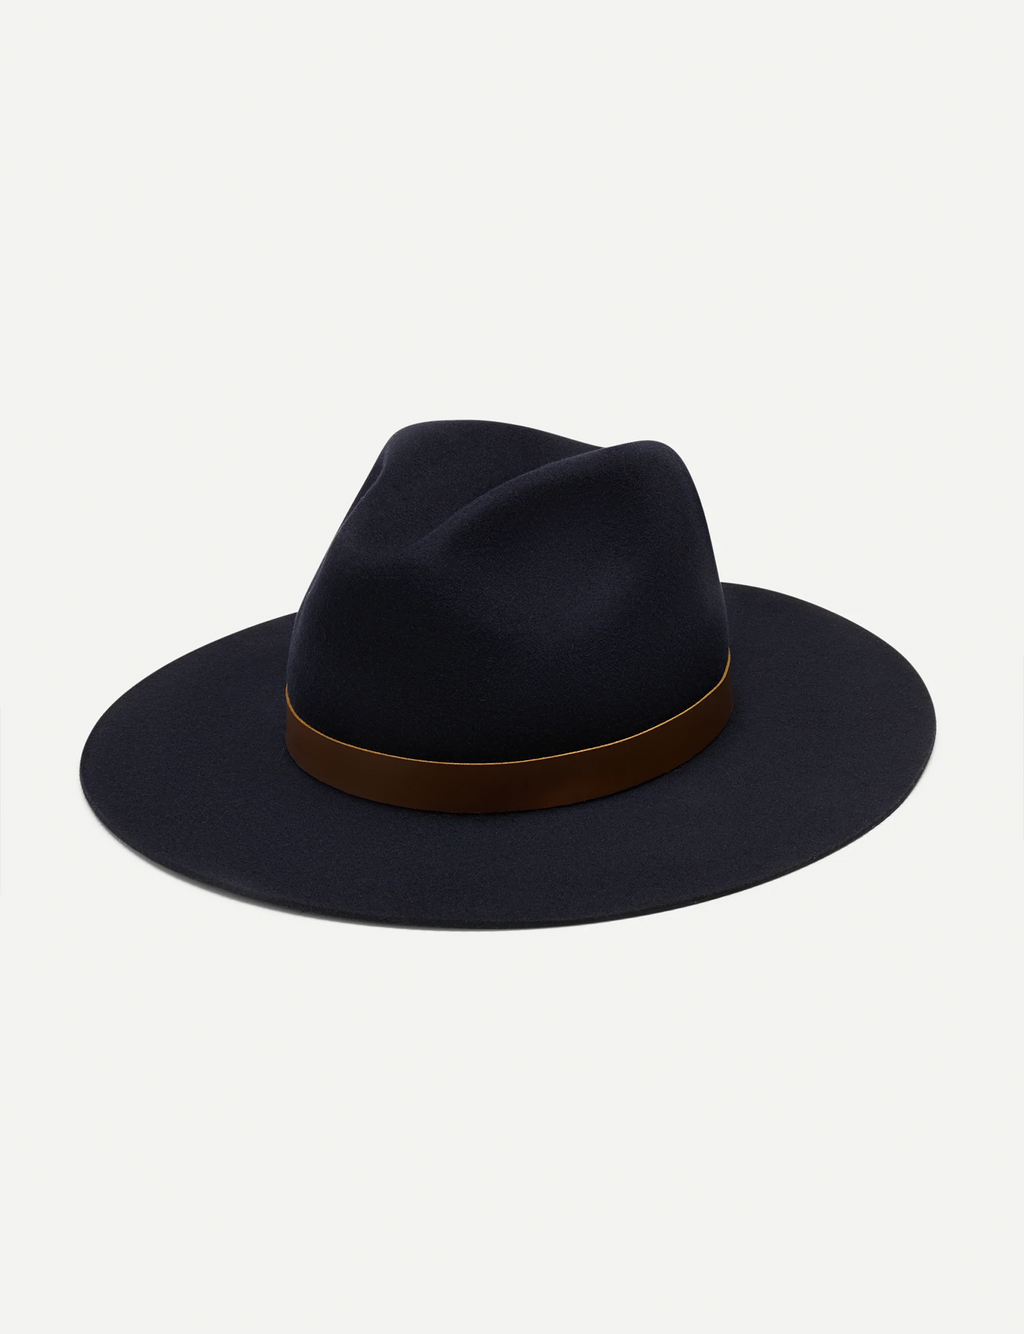 Lux Rancher Hat, Black